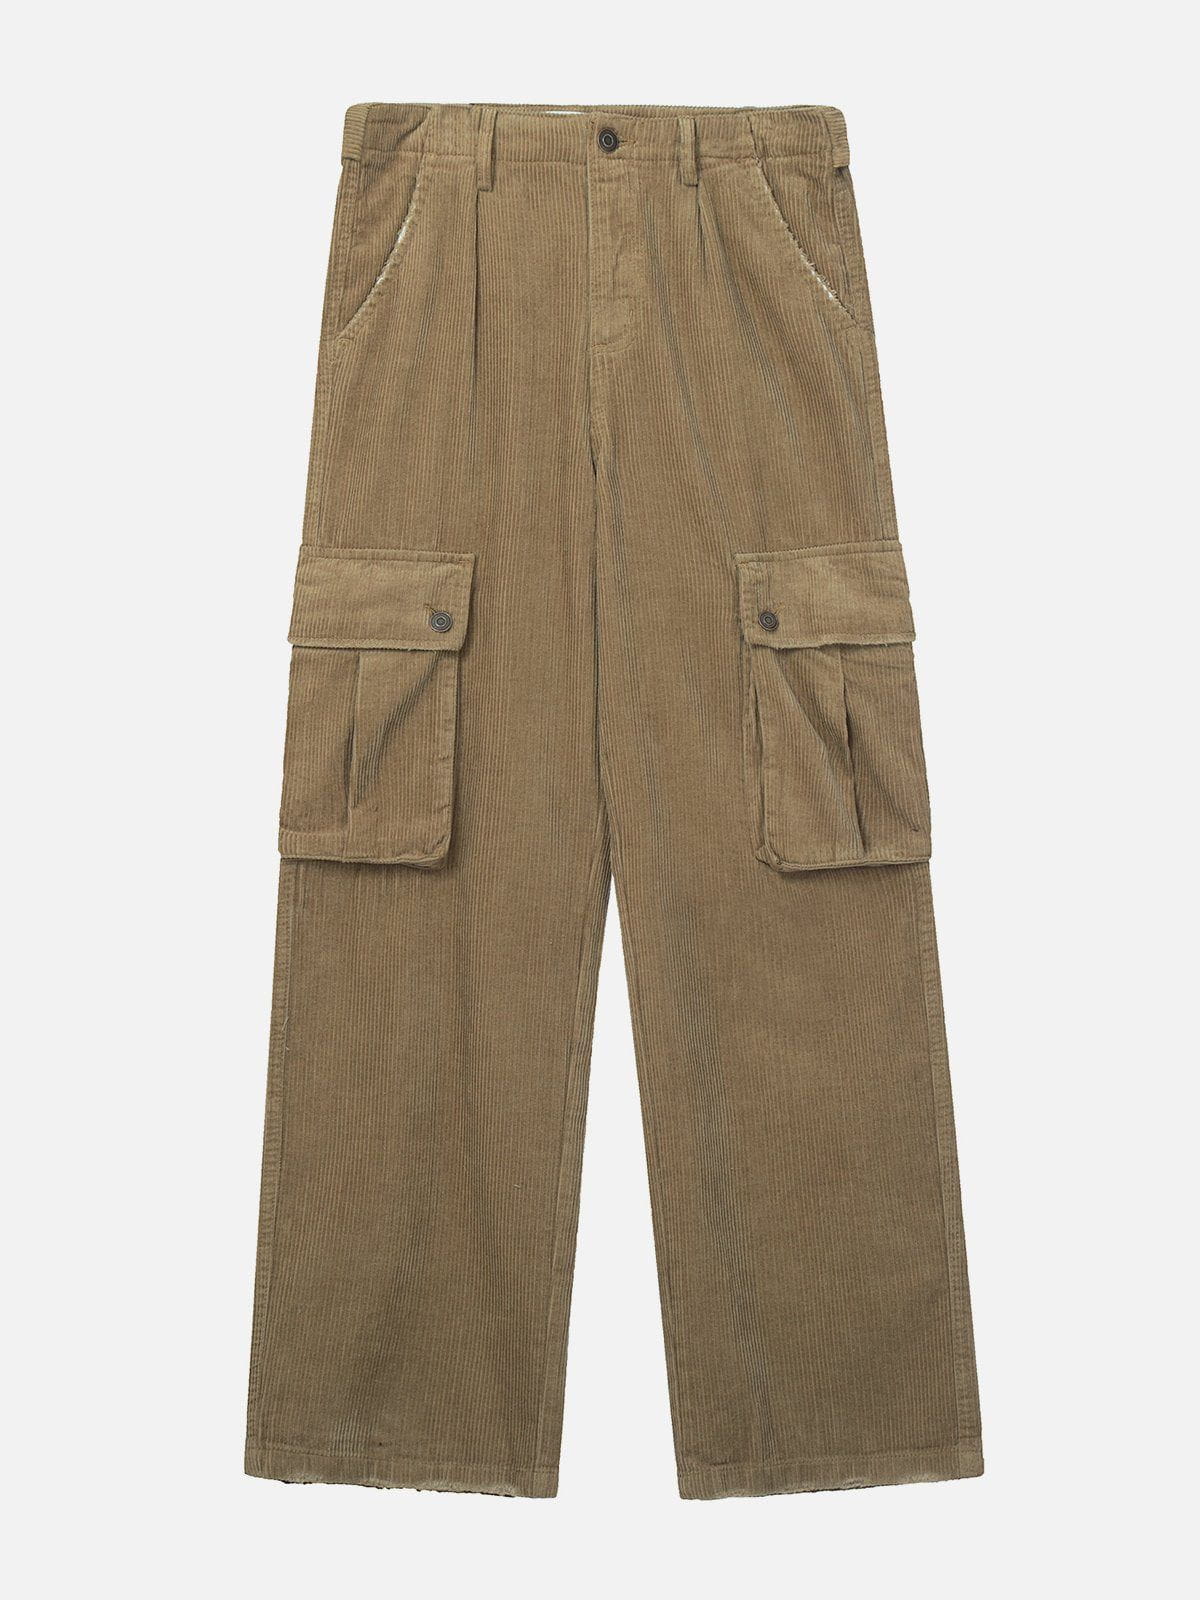 Eprezzy® - Solid Corduroy Multi Pocket Cargo Pants Streetwear Fashion - eprezzy.com